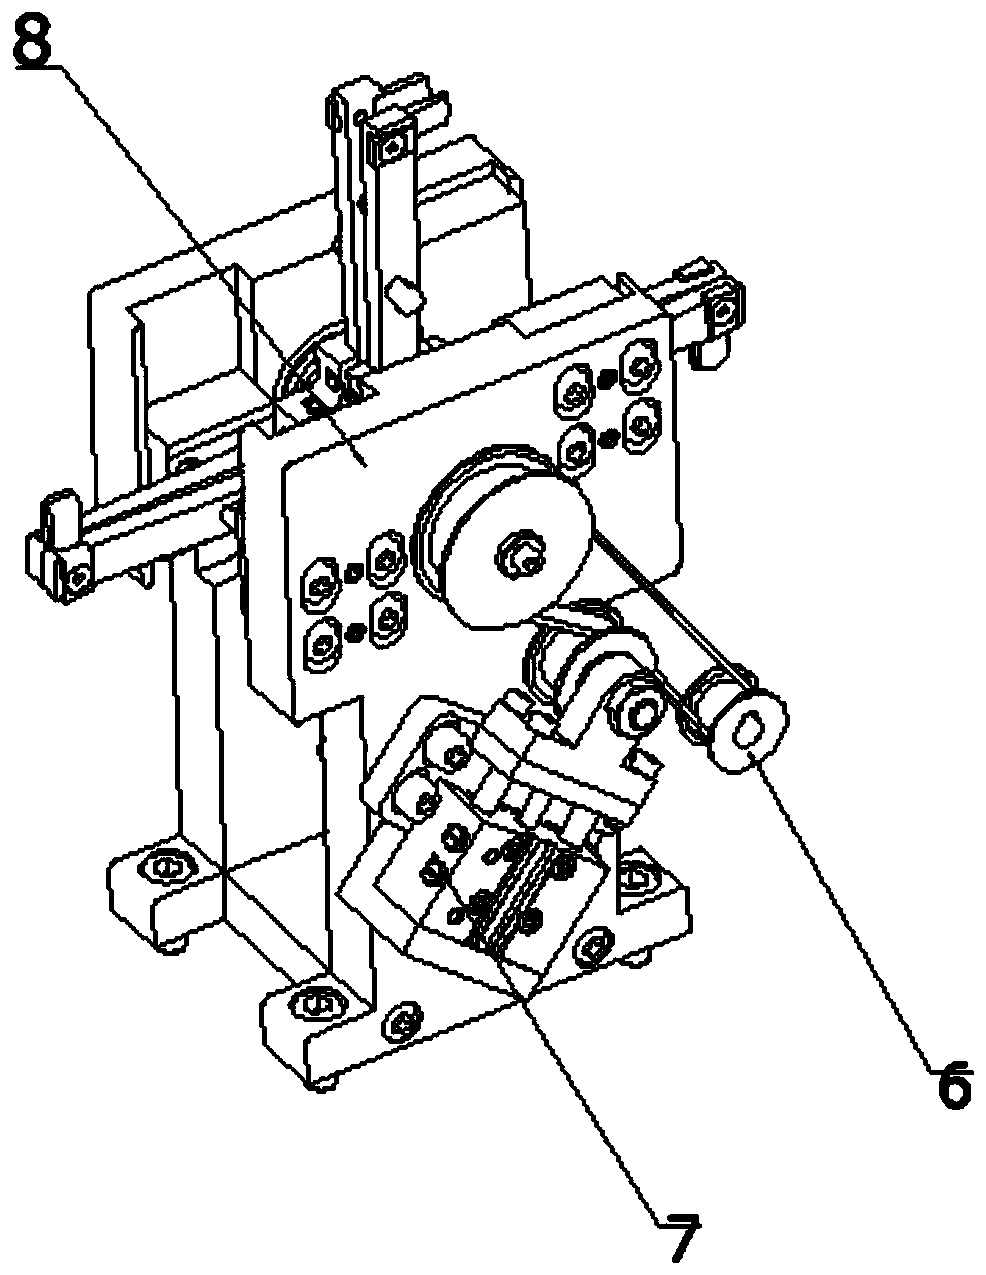 Directional rotating manipulator of water meter gear box